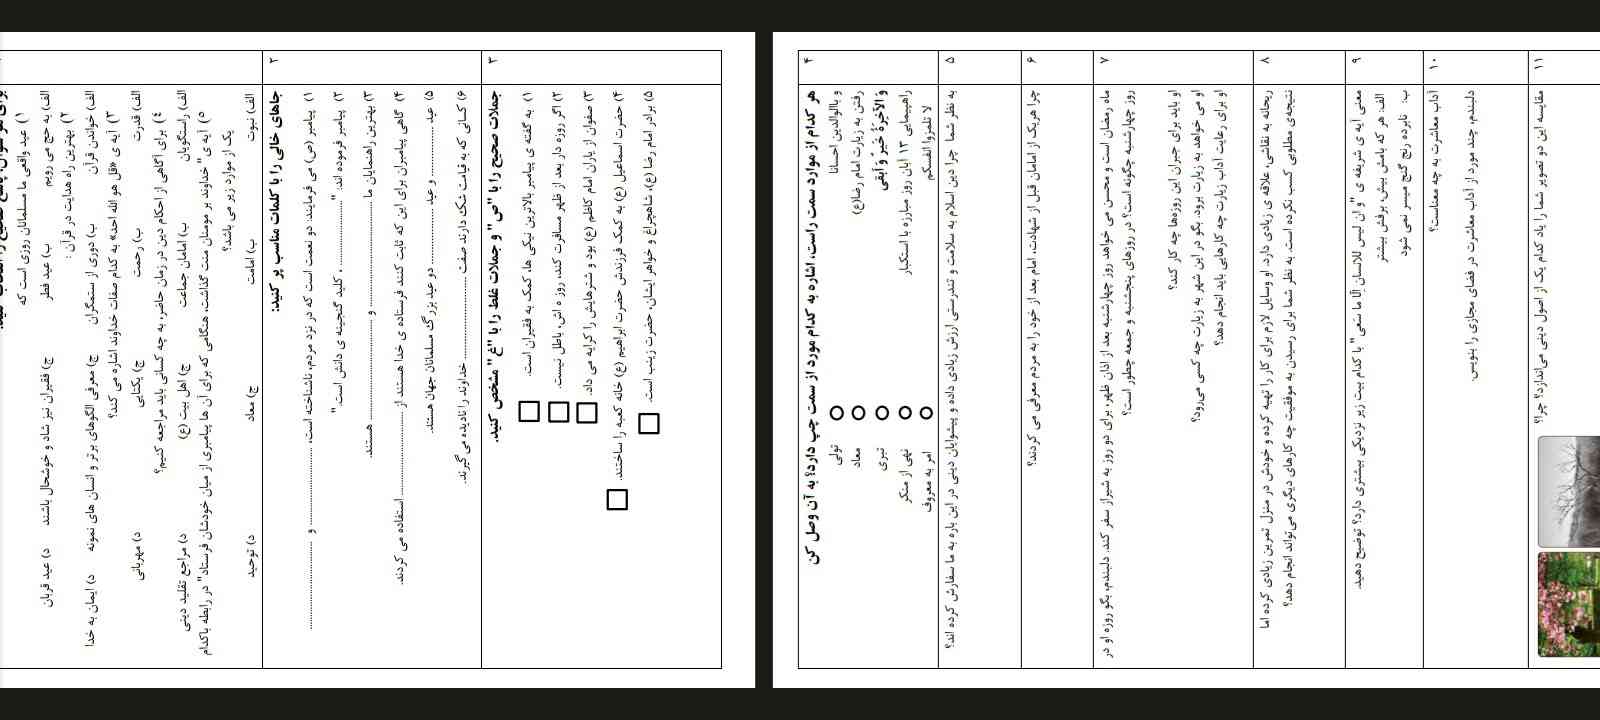 بچه ها امتحان هدیه نوبت صبح ناحیه ۵ اصفهان است امتحان خودمه اگه خواستید میتونید استفاده کنید